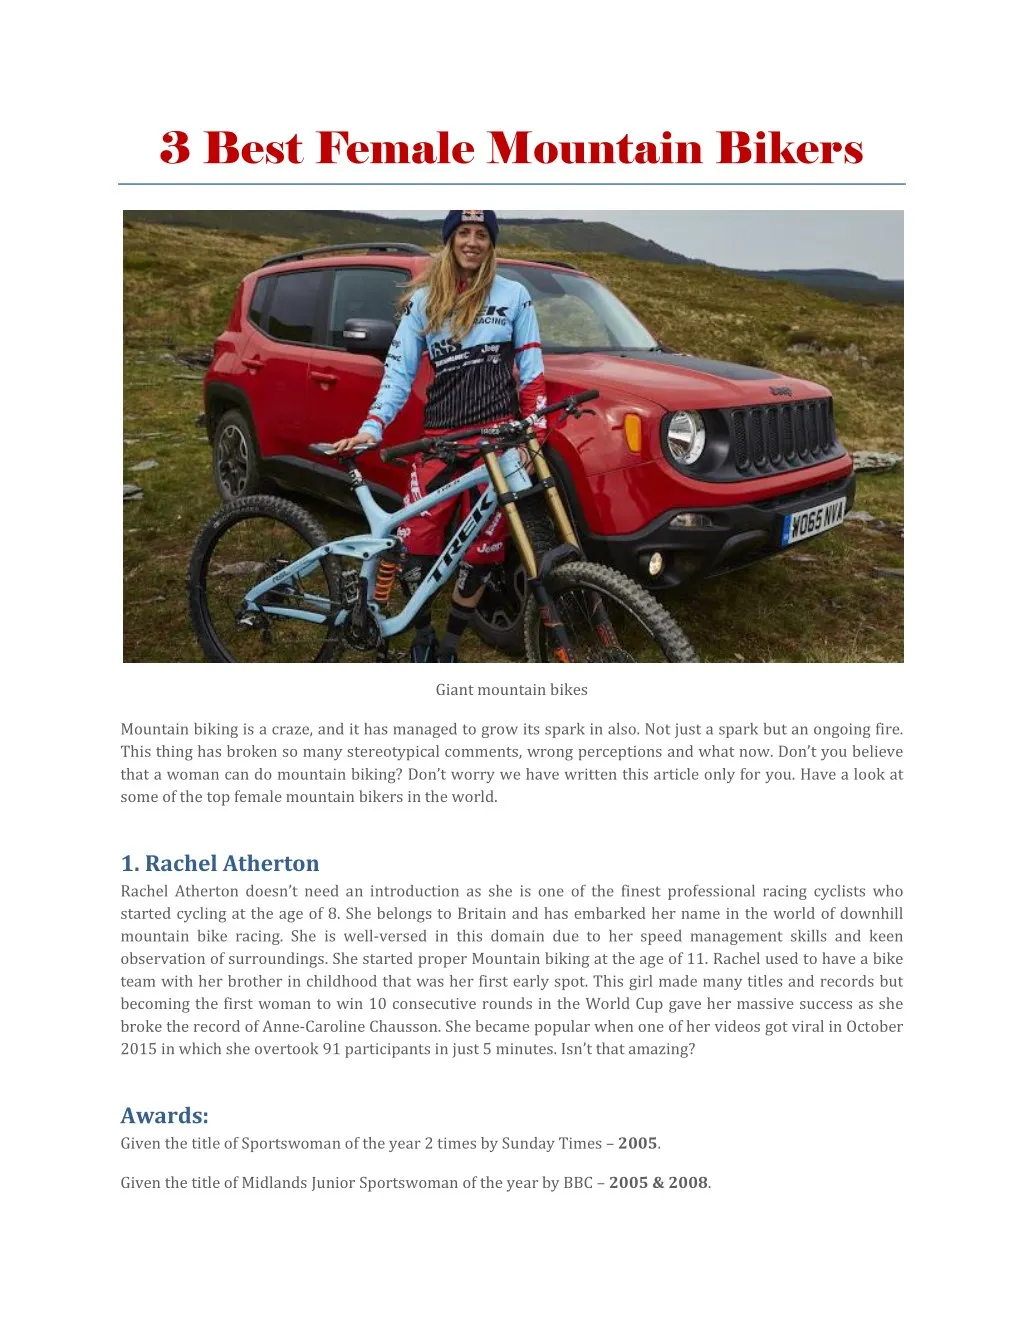 3 best female mountain bikers